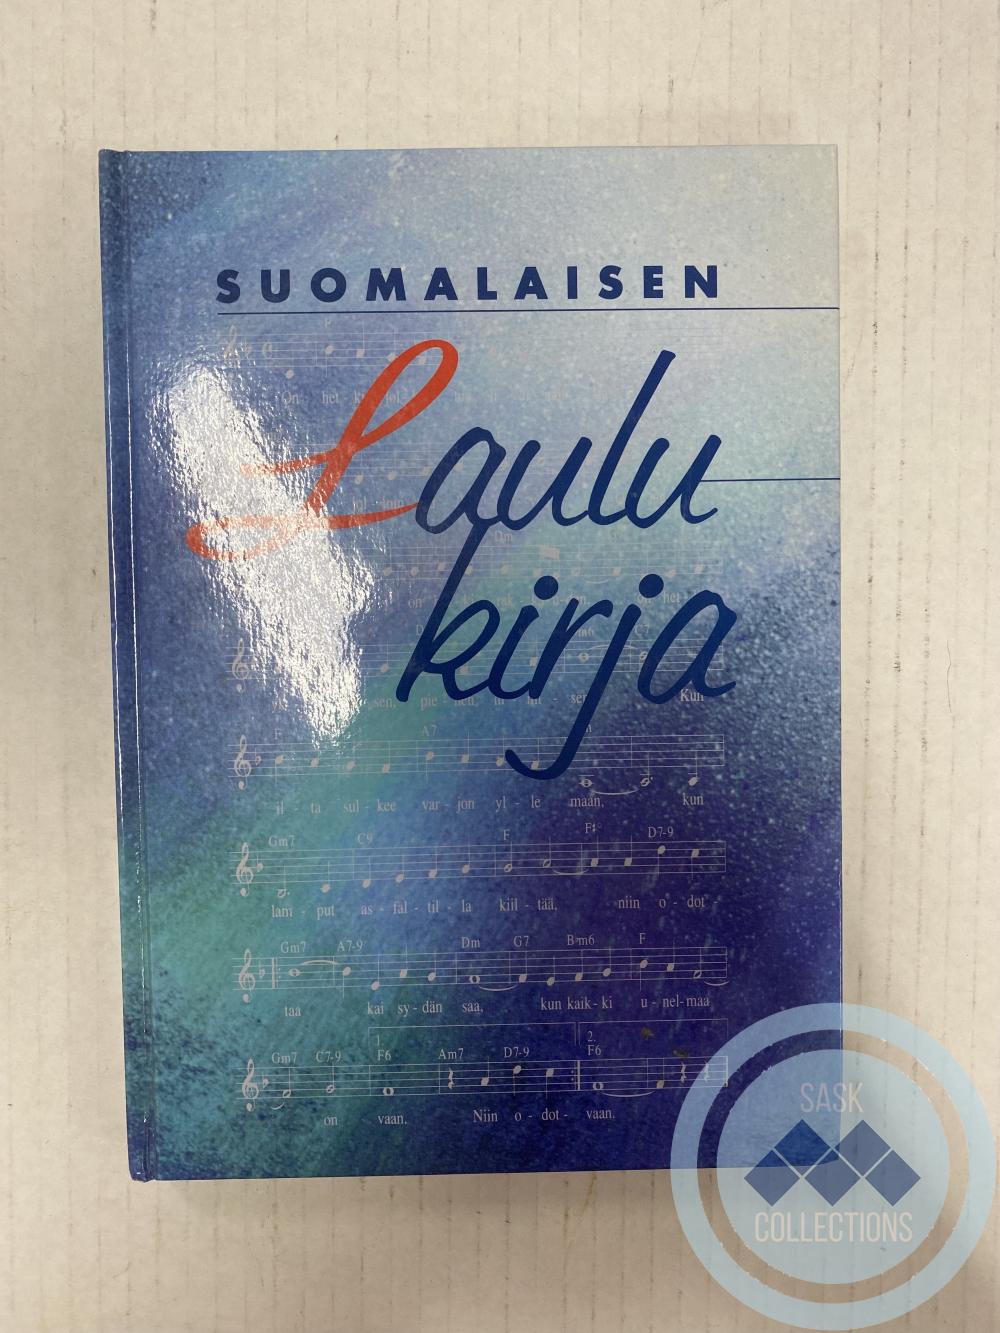 Suomalaisen Laulu kirja - Finnish song book